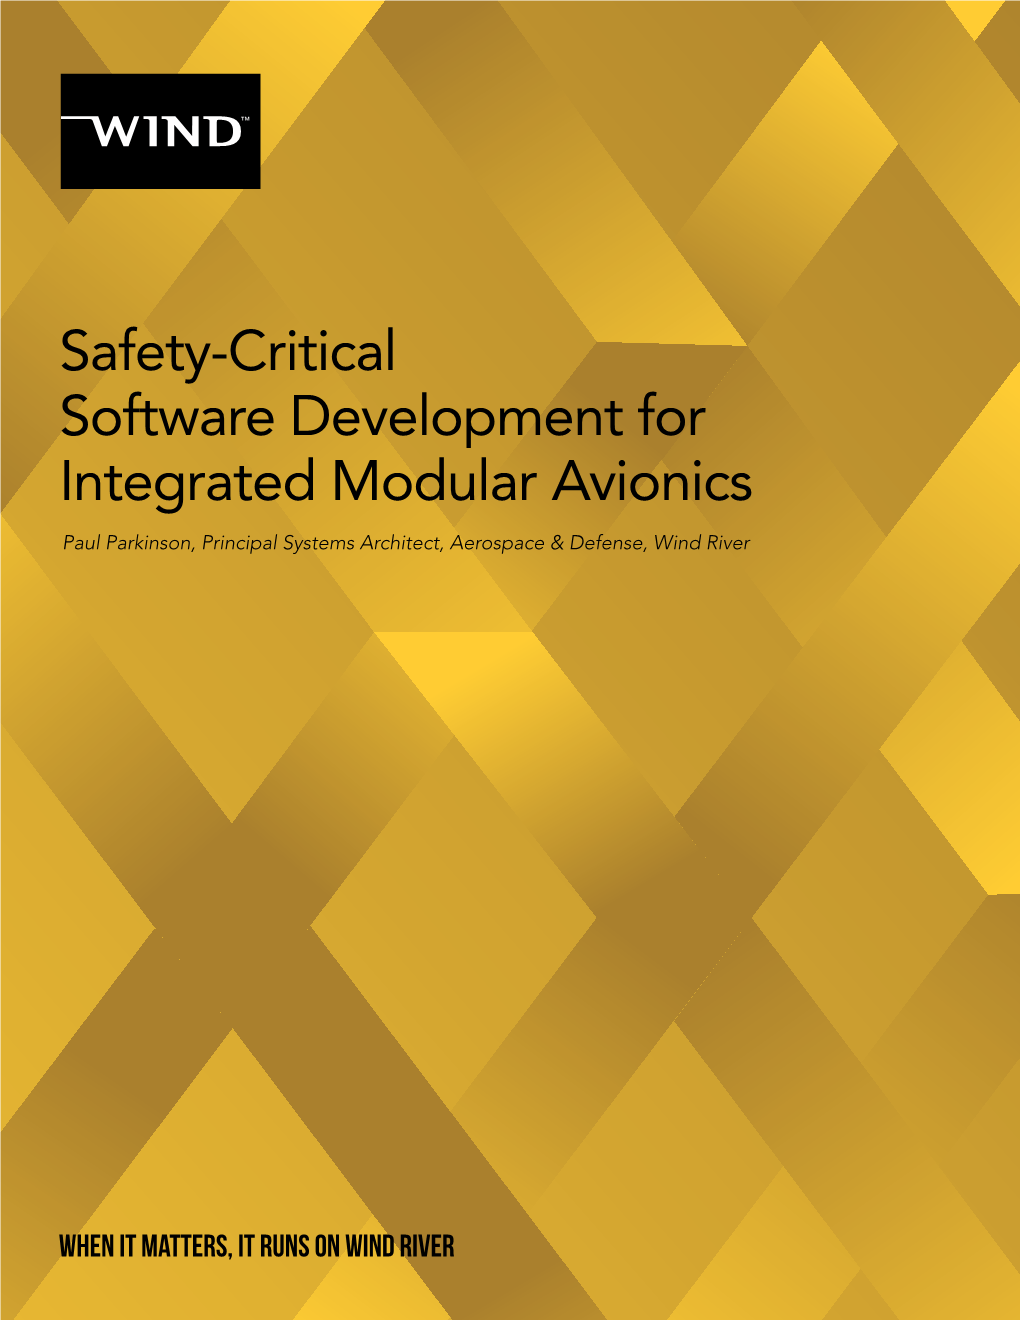 Safety-Critical Software Development for Integrated Modular Avionics